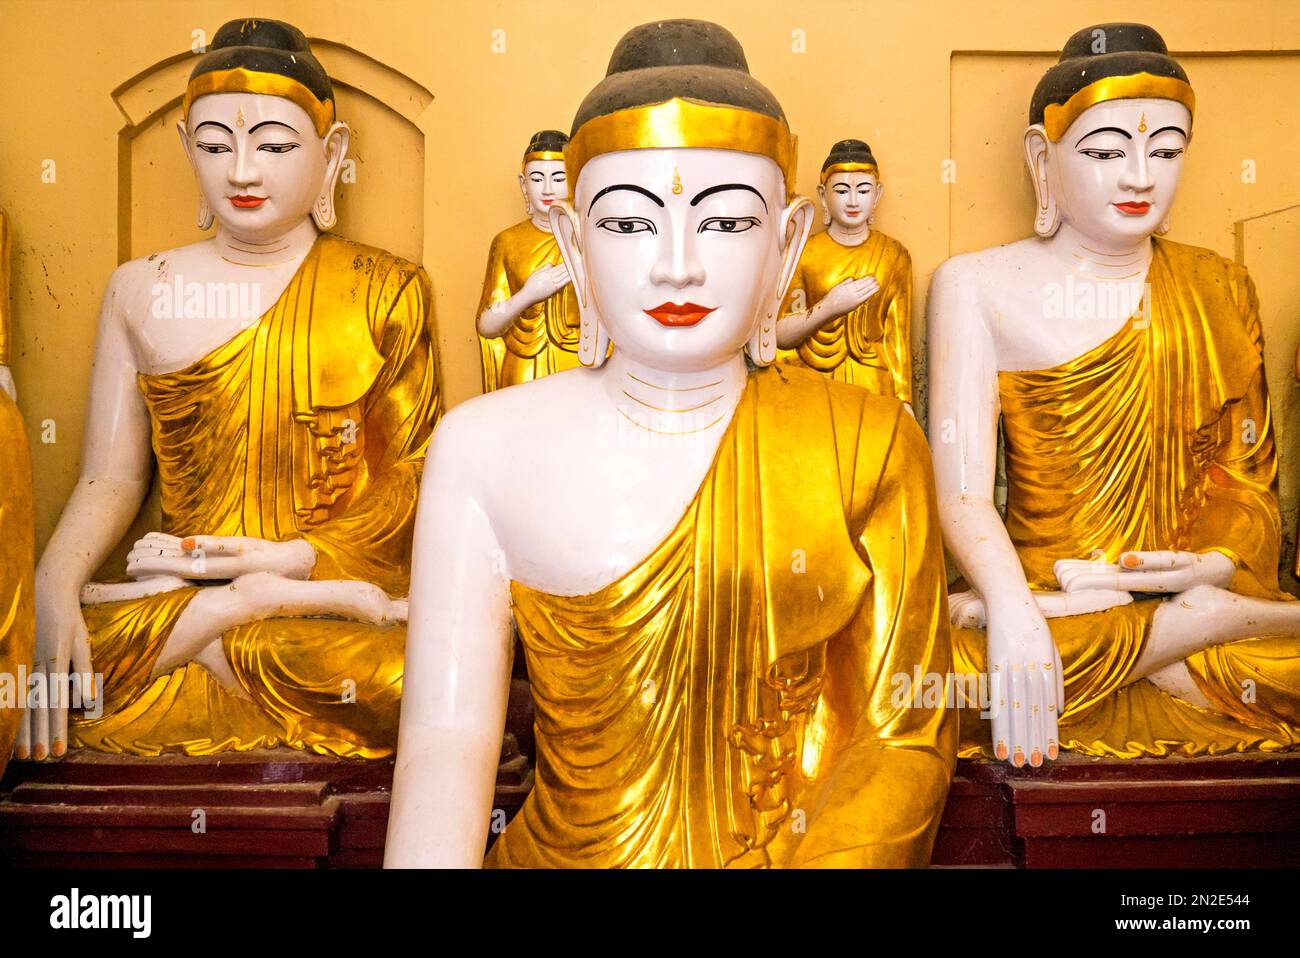 Temple of the Buddha figures, Shwedagon Pagoda, Yangon, Myanmar, Yangon, Myanmar Stock Photo